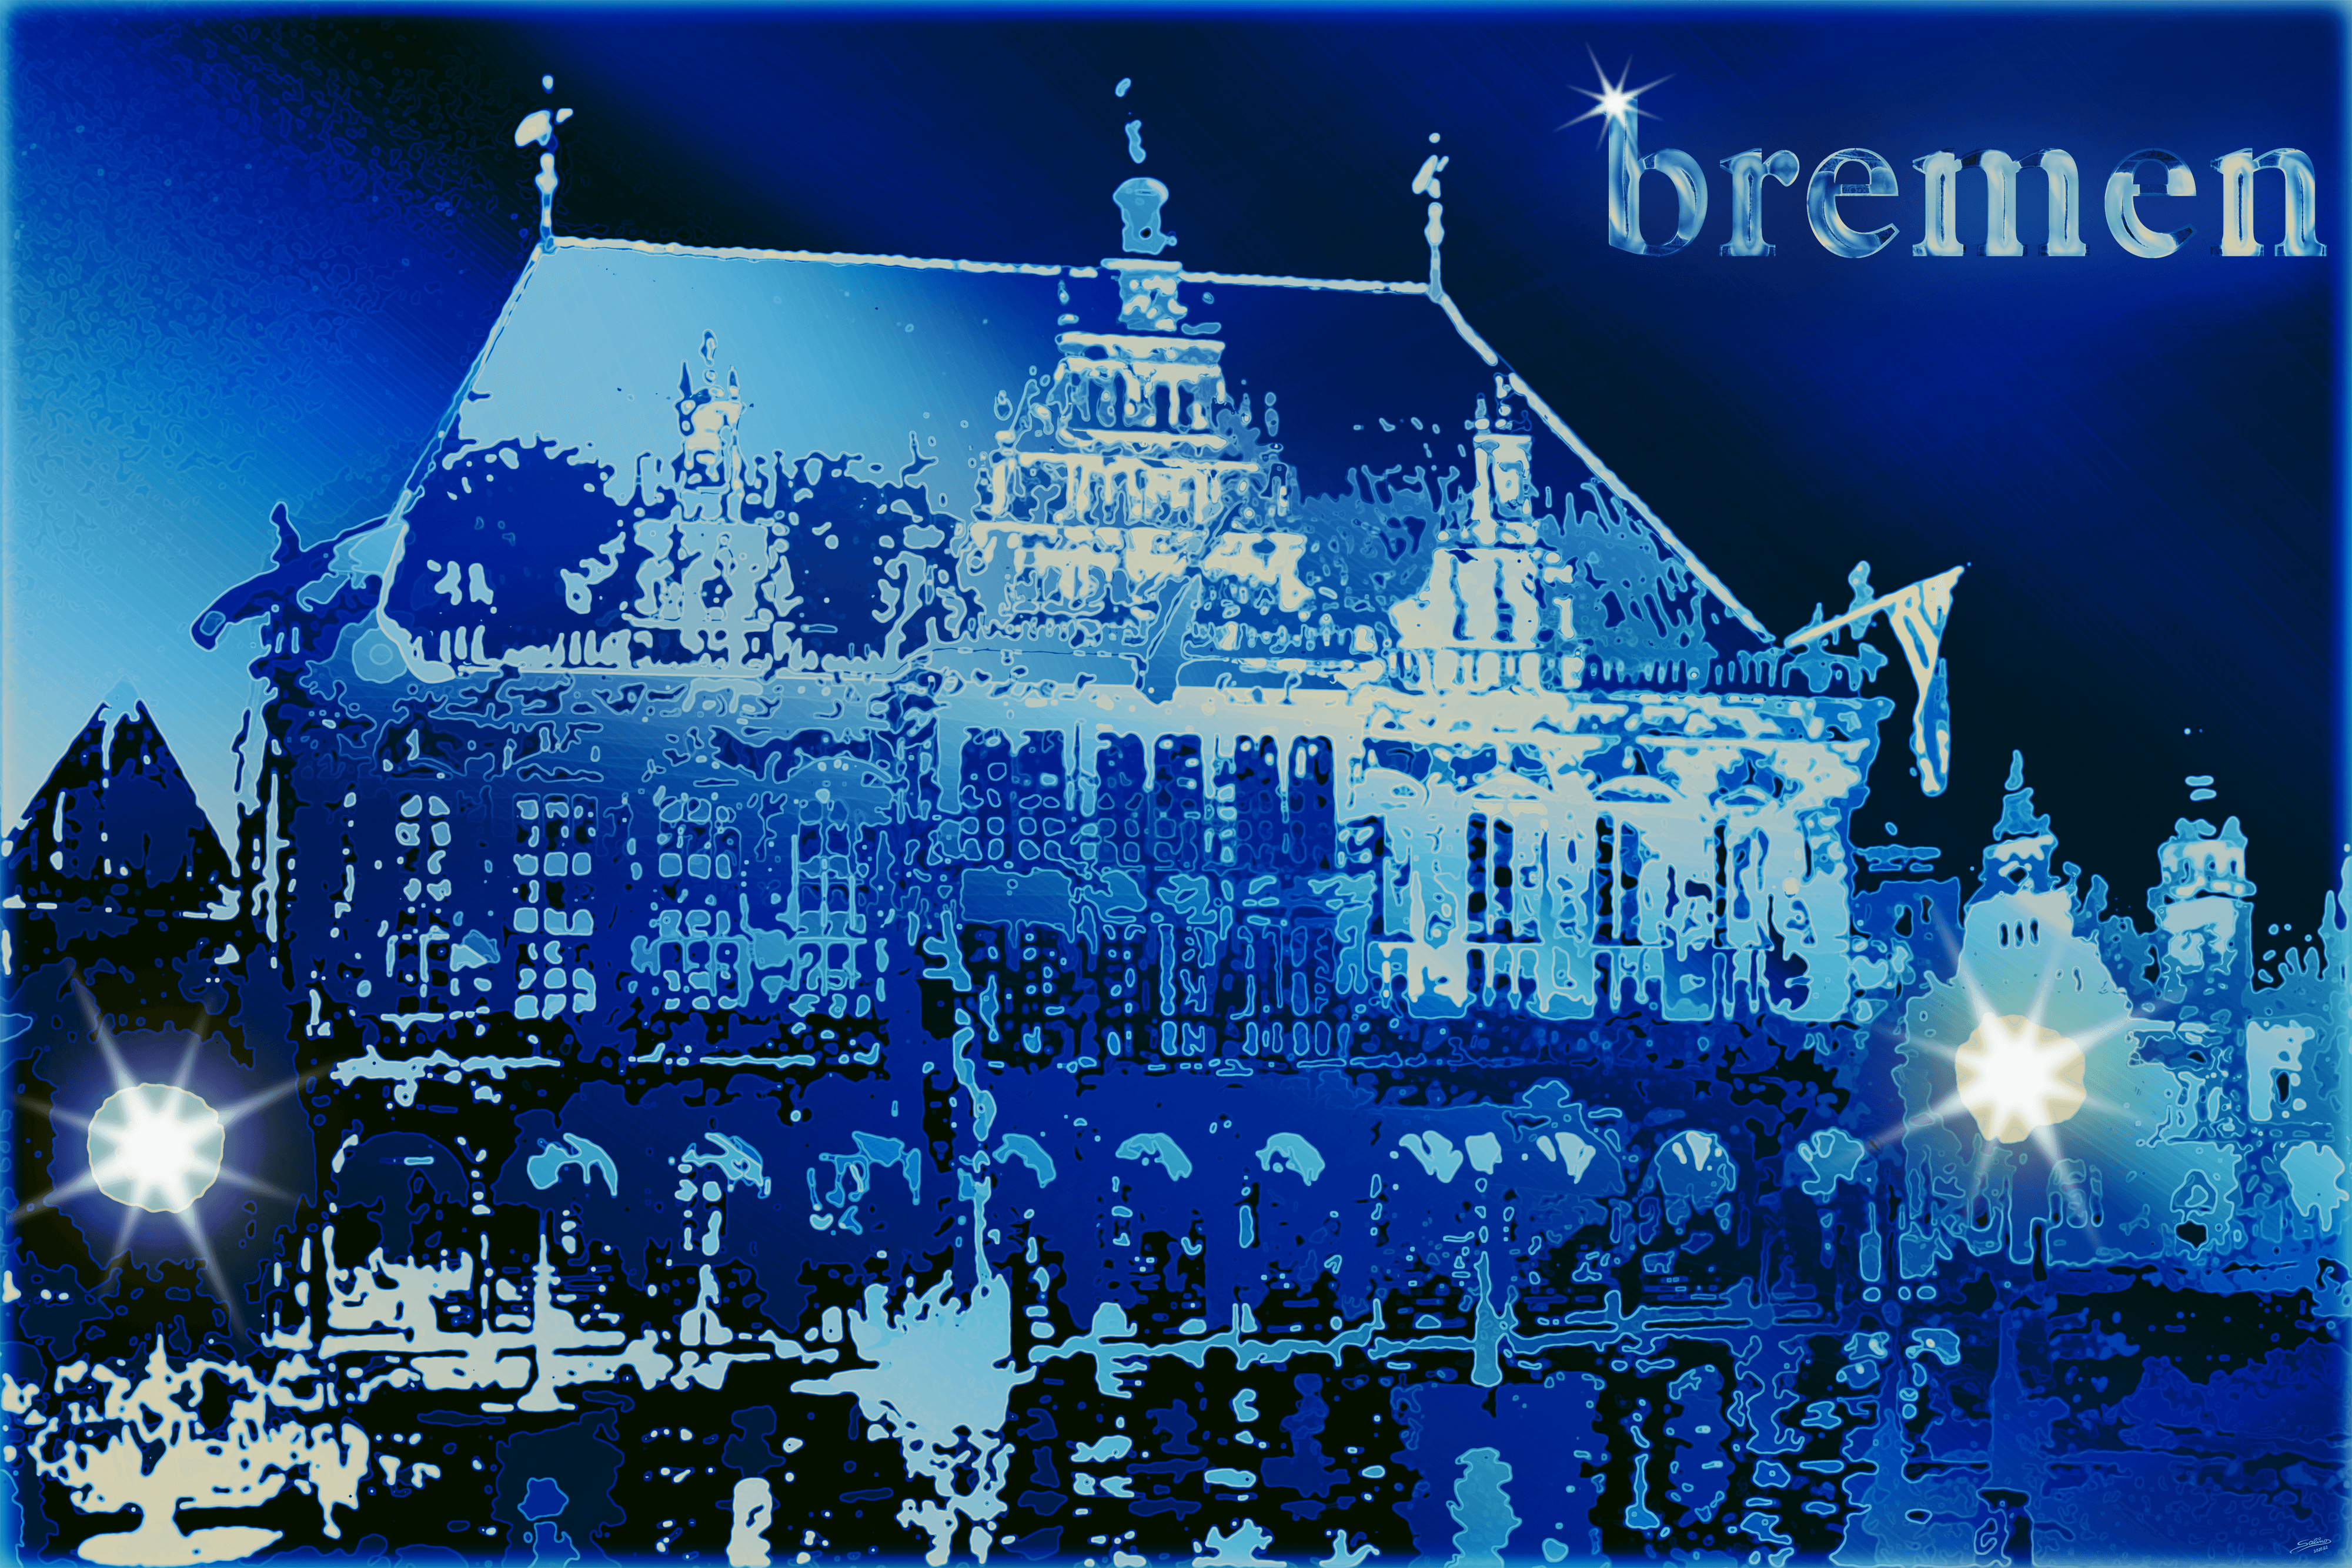 Bremen City Hall – Blue Metal Edition – Salinos 19/22 #010